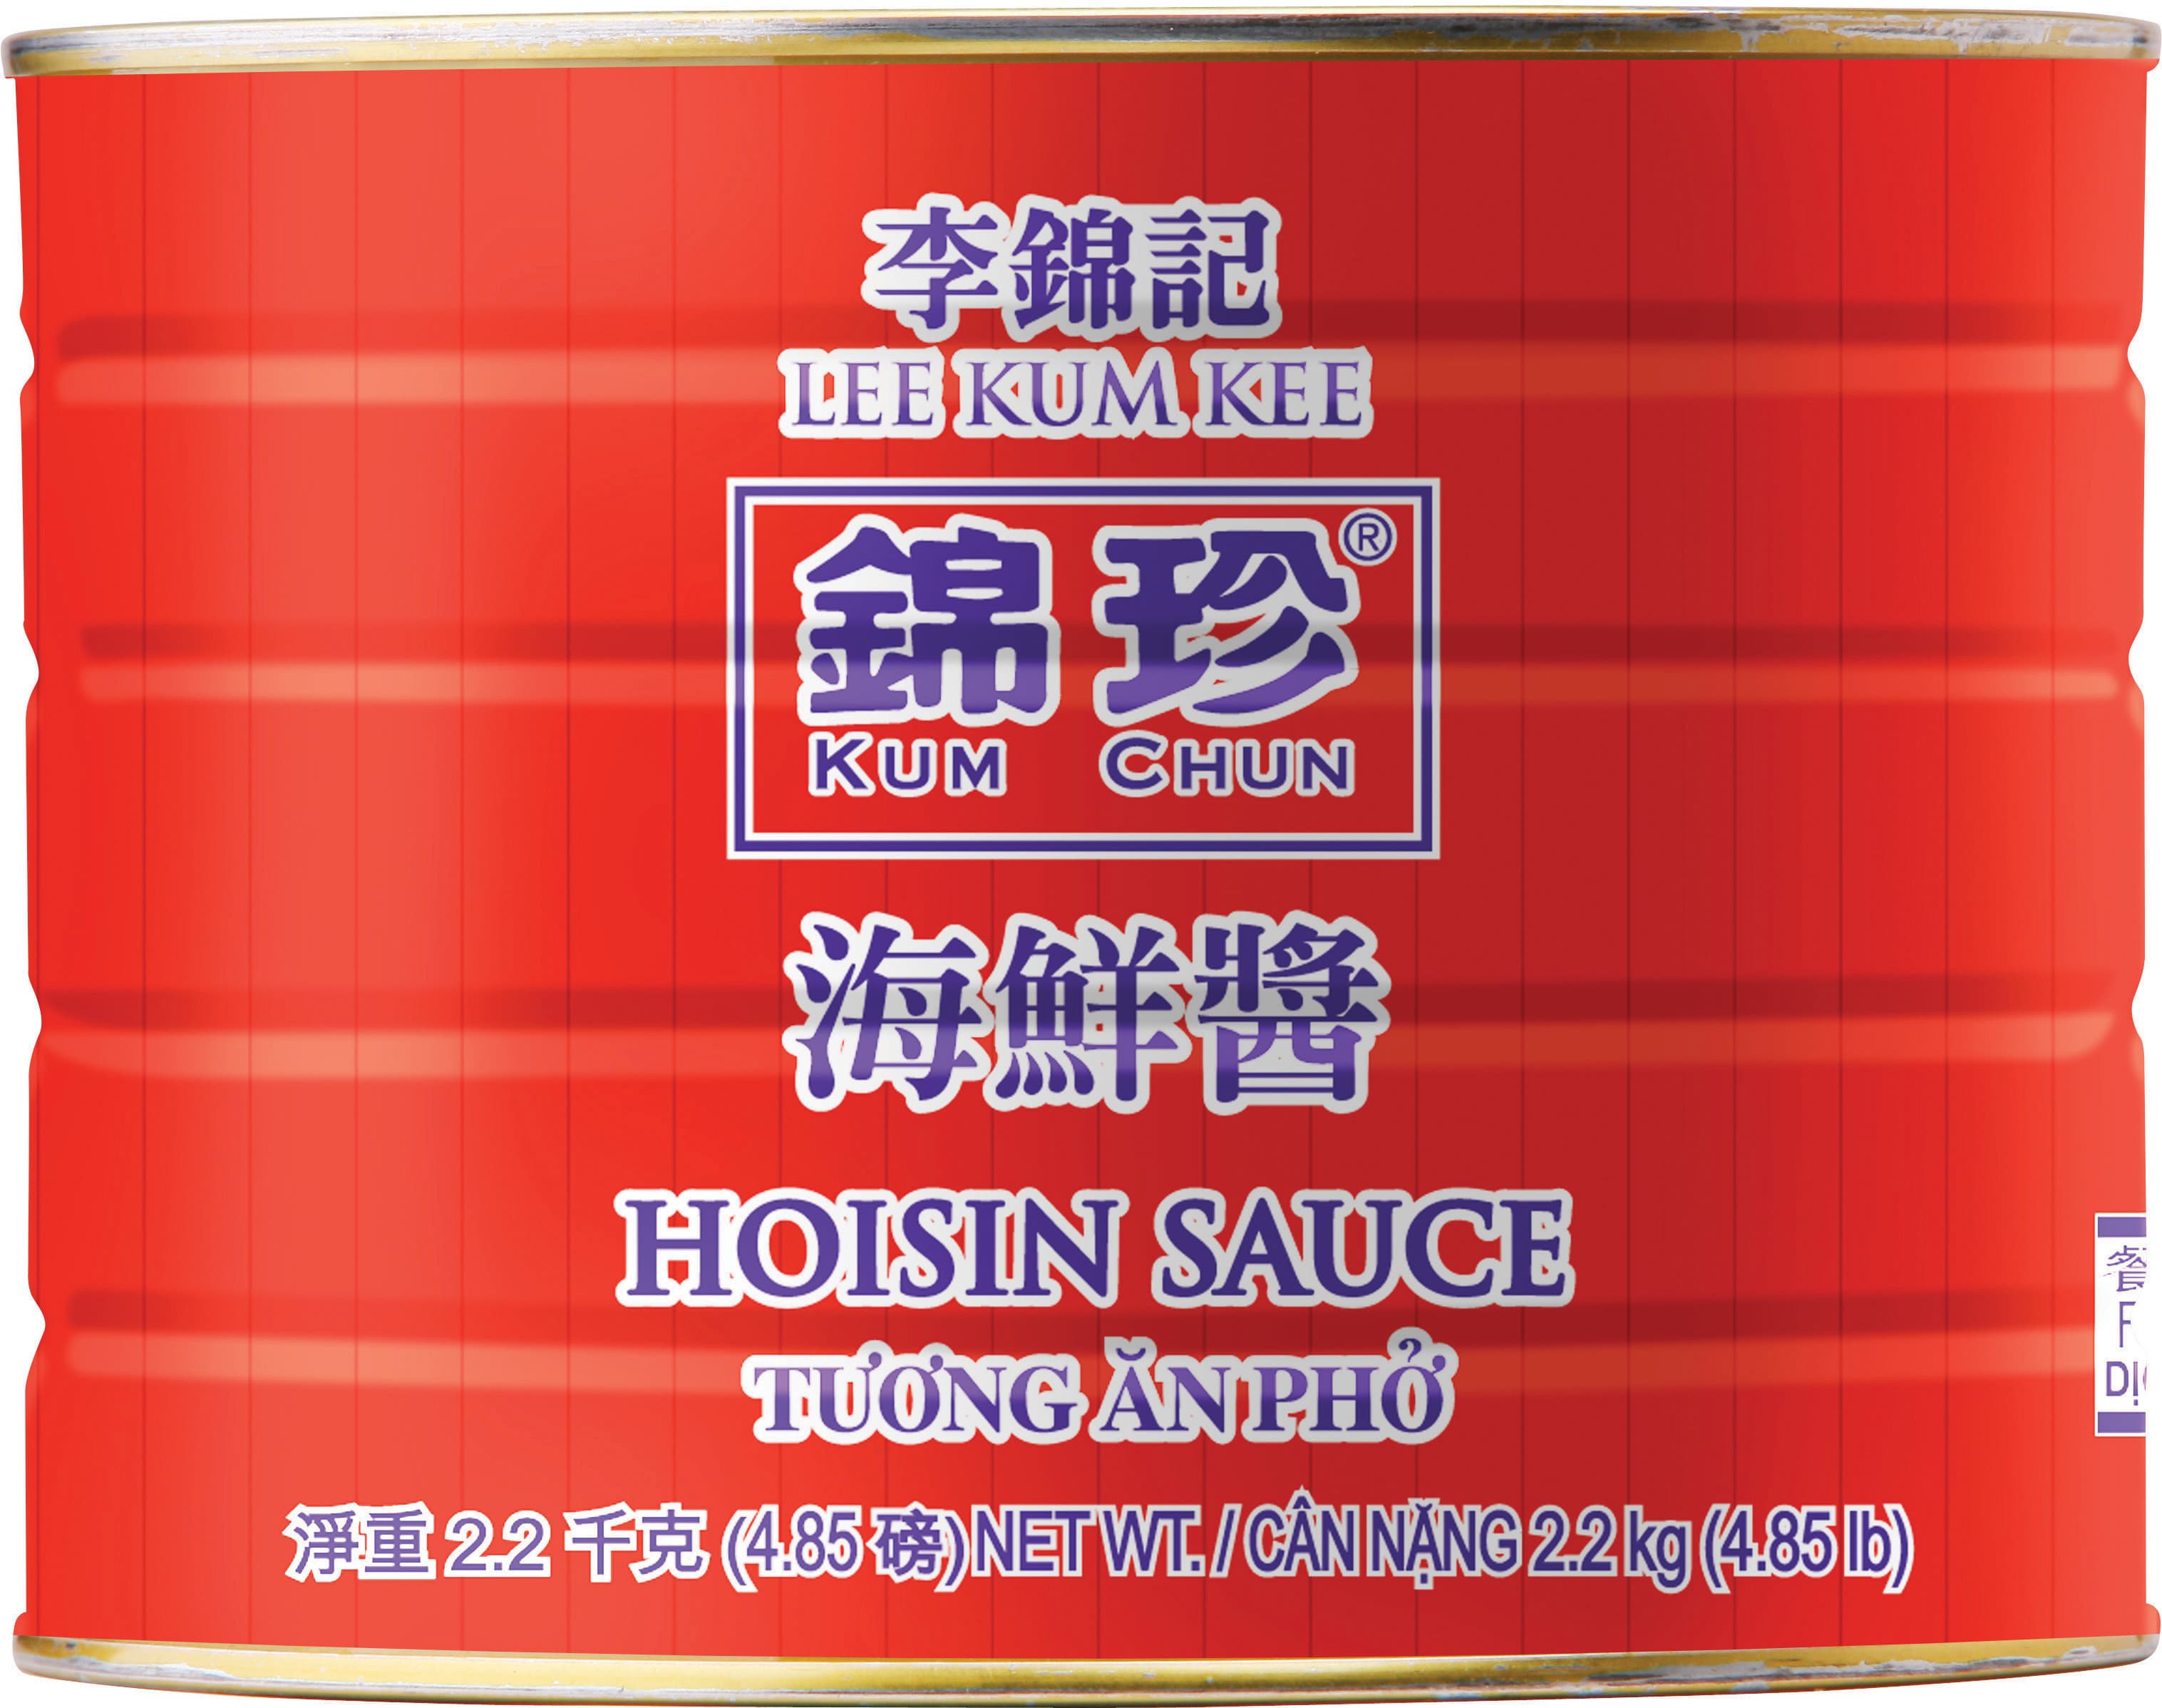 Kum ChunHoisin Sauce 485lb 22kg 4625in